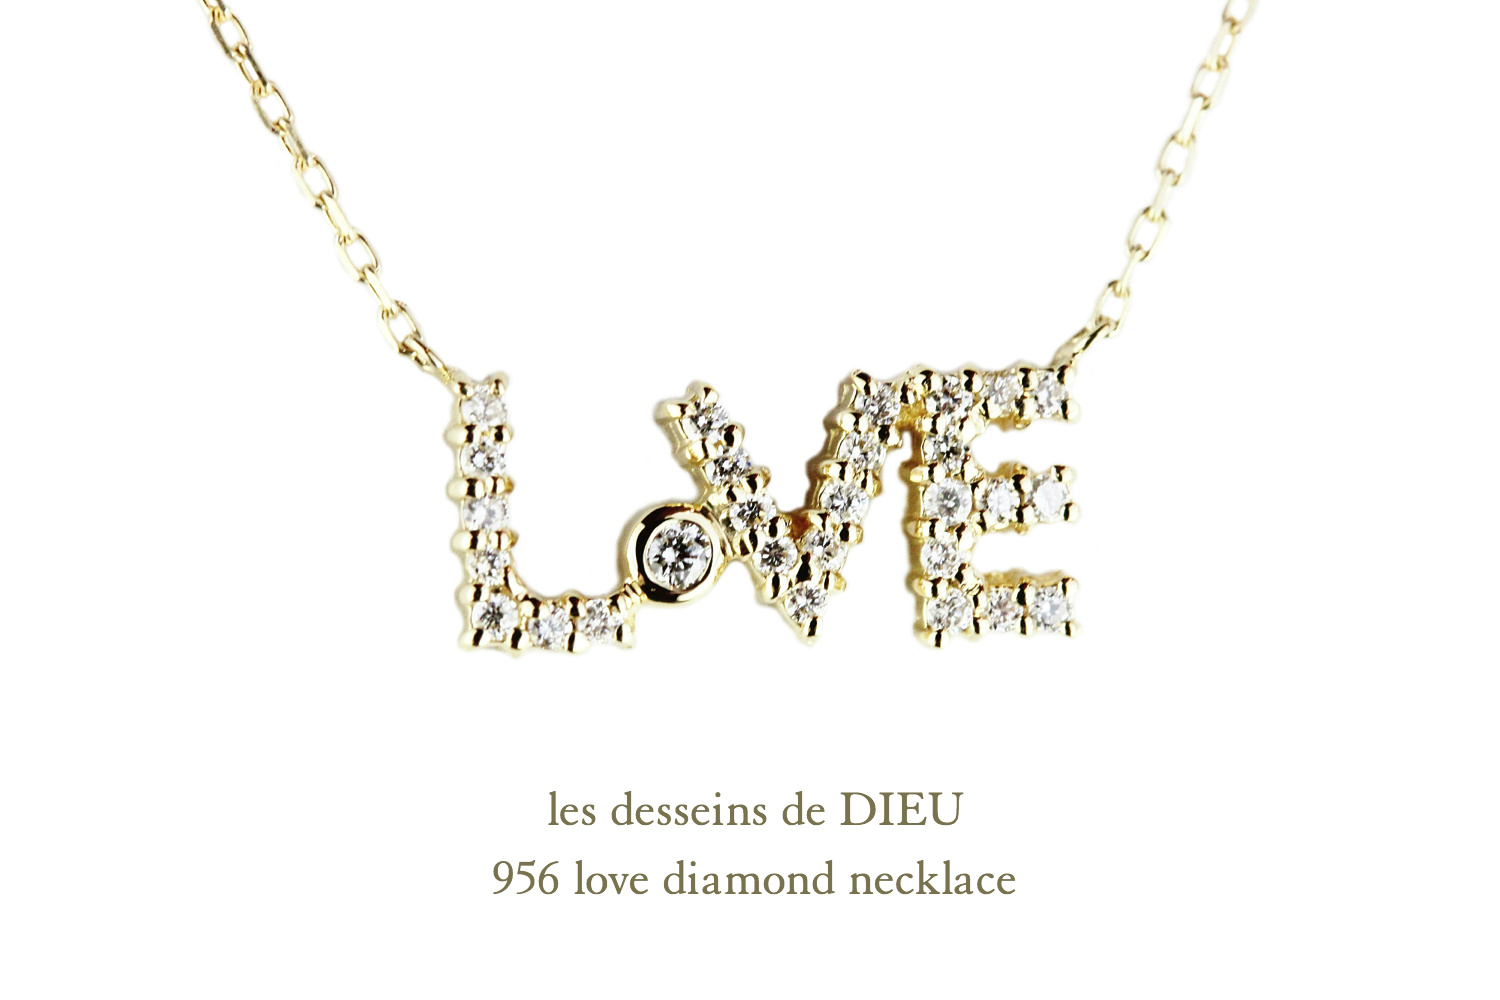 レデッサンドゥデュー 956 ラブ ダイヤモンド ネックレス 18金,les desseins de DIEU LOVE Diamond Necklace K18